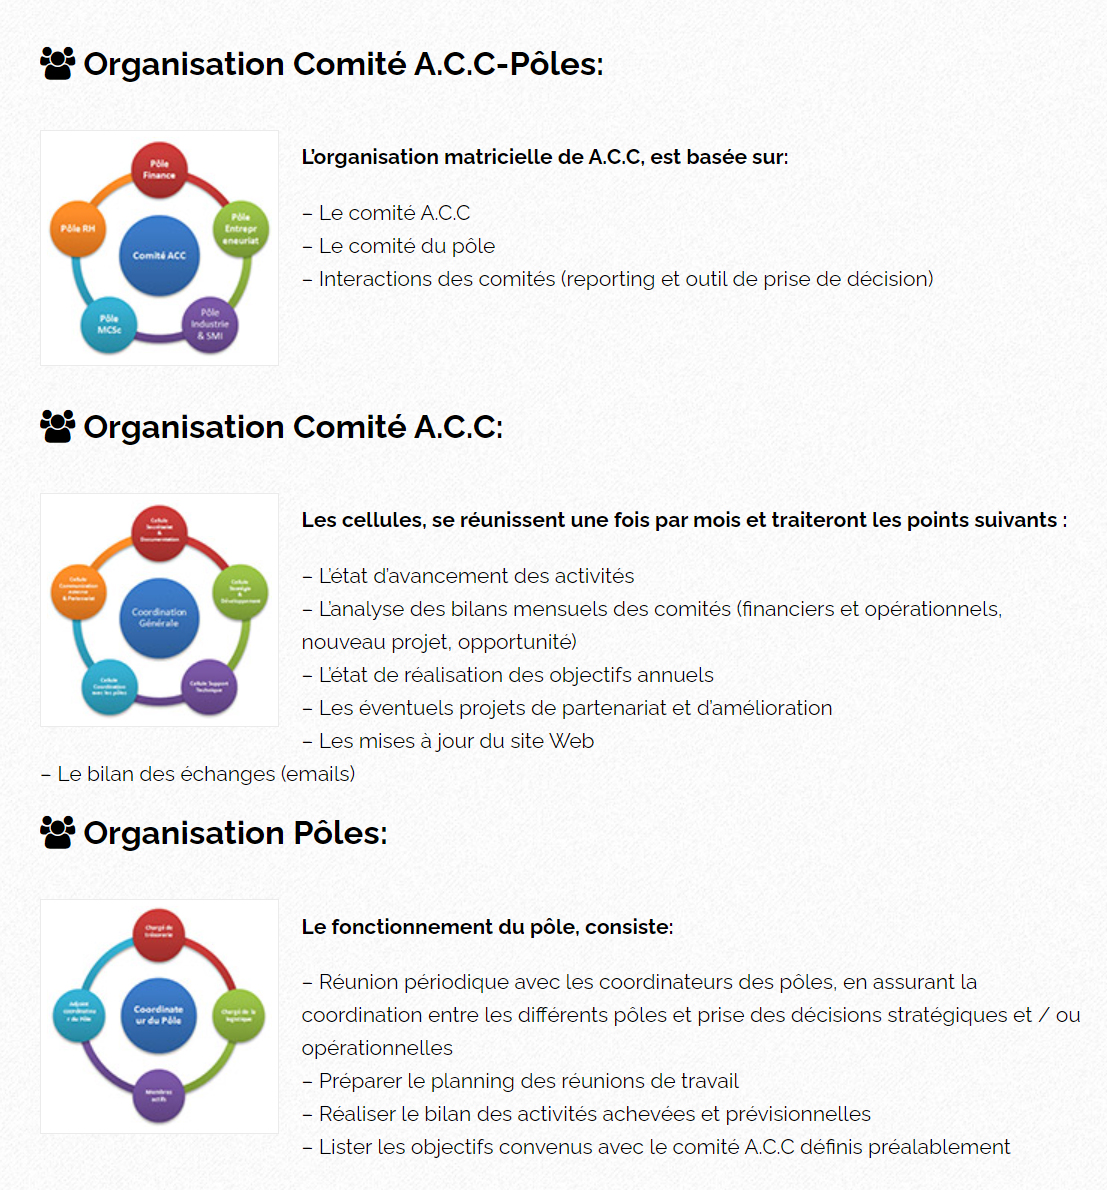 Organisation Comité A.C.C-Pôles